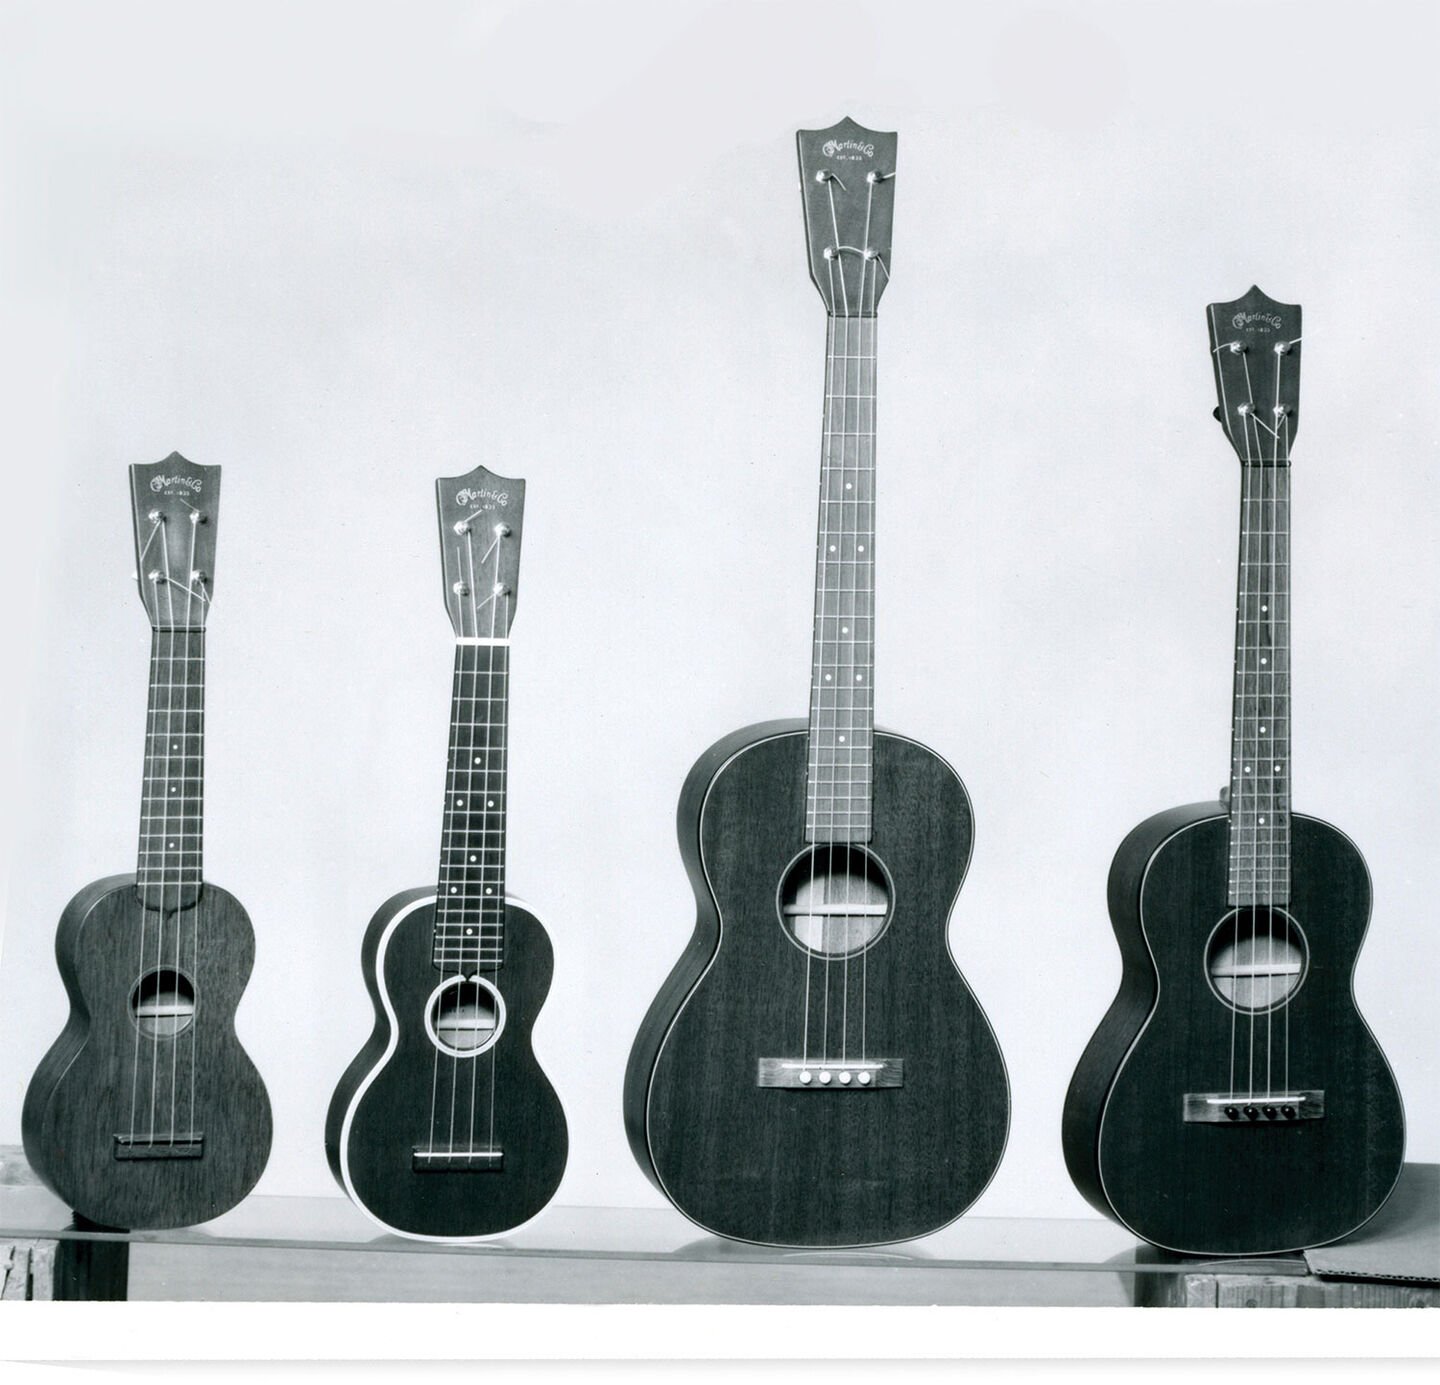 Black and white photo of Martin ukuleles